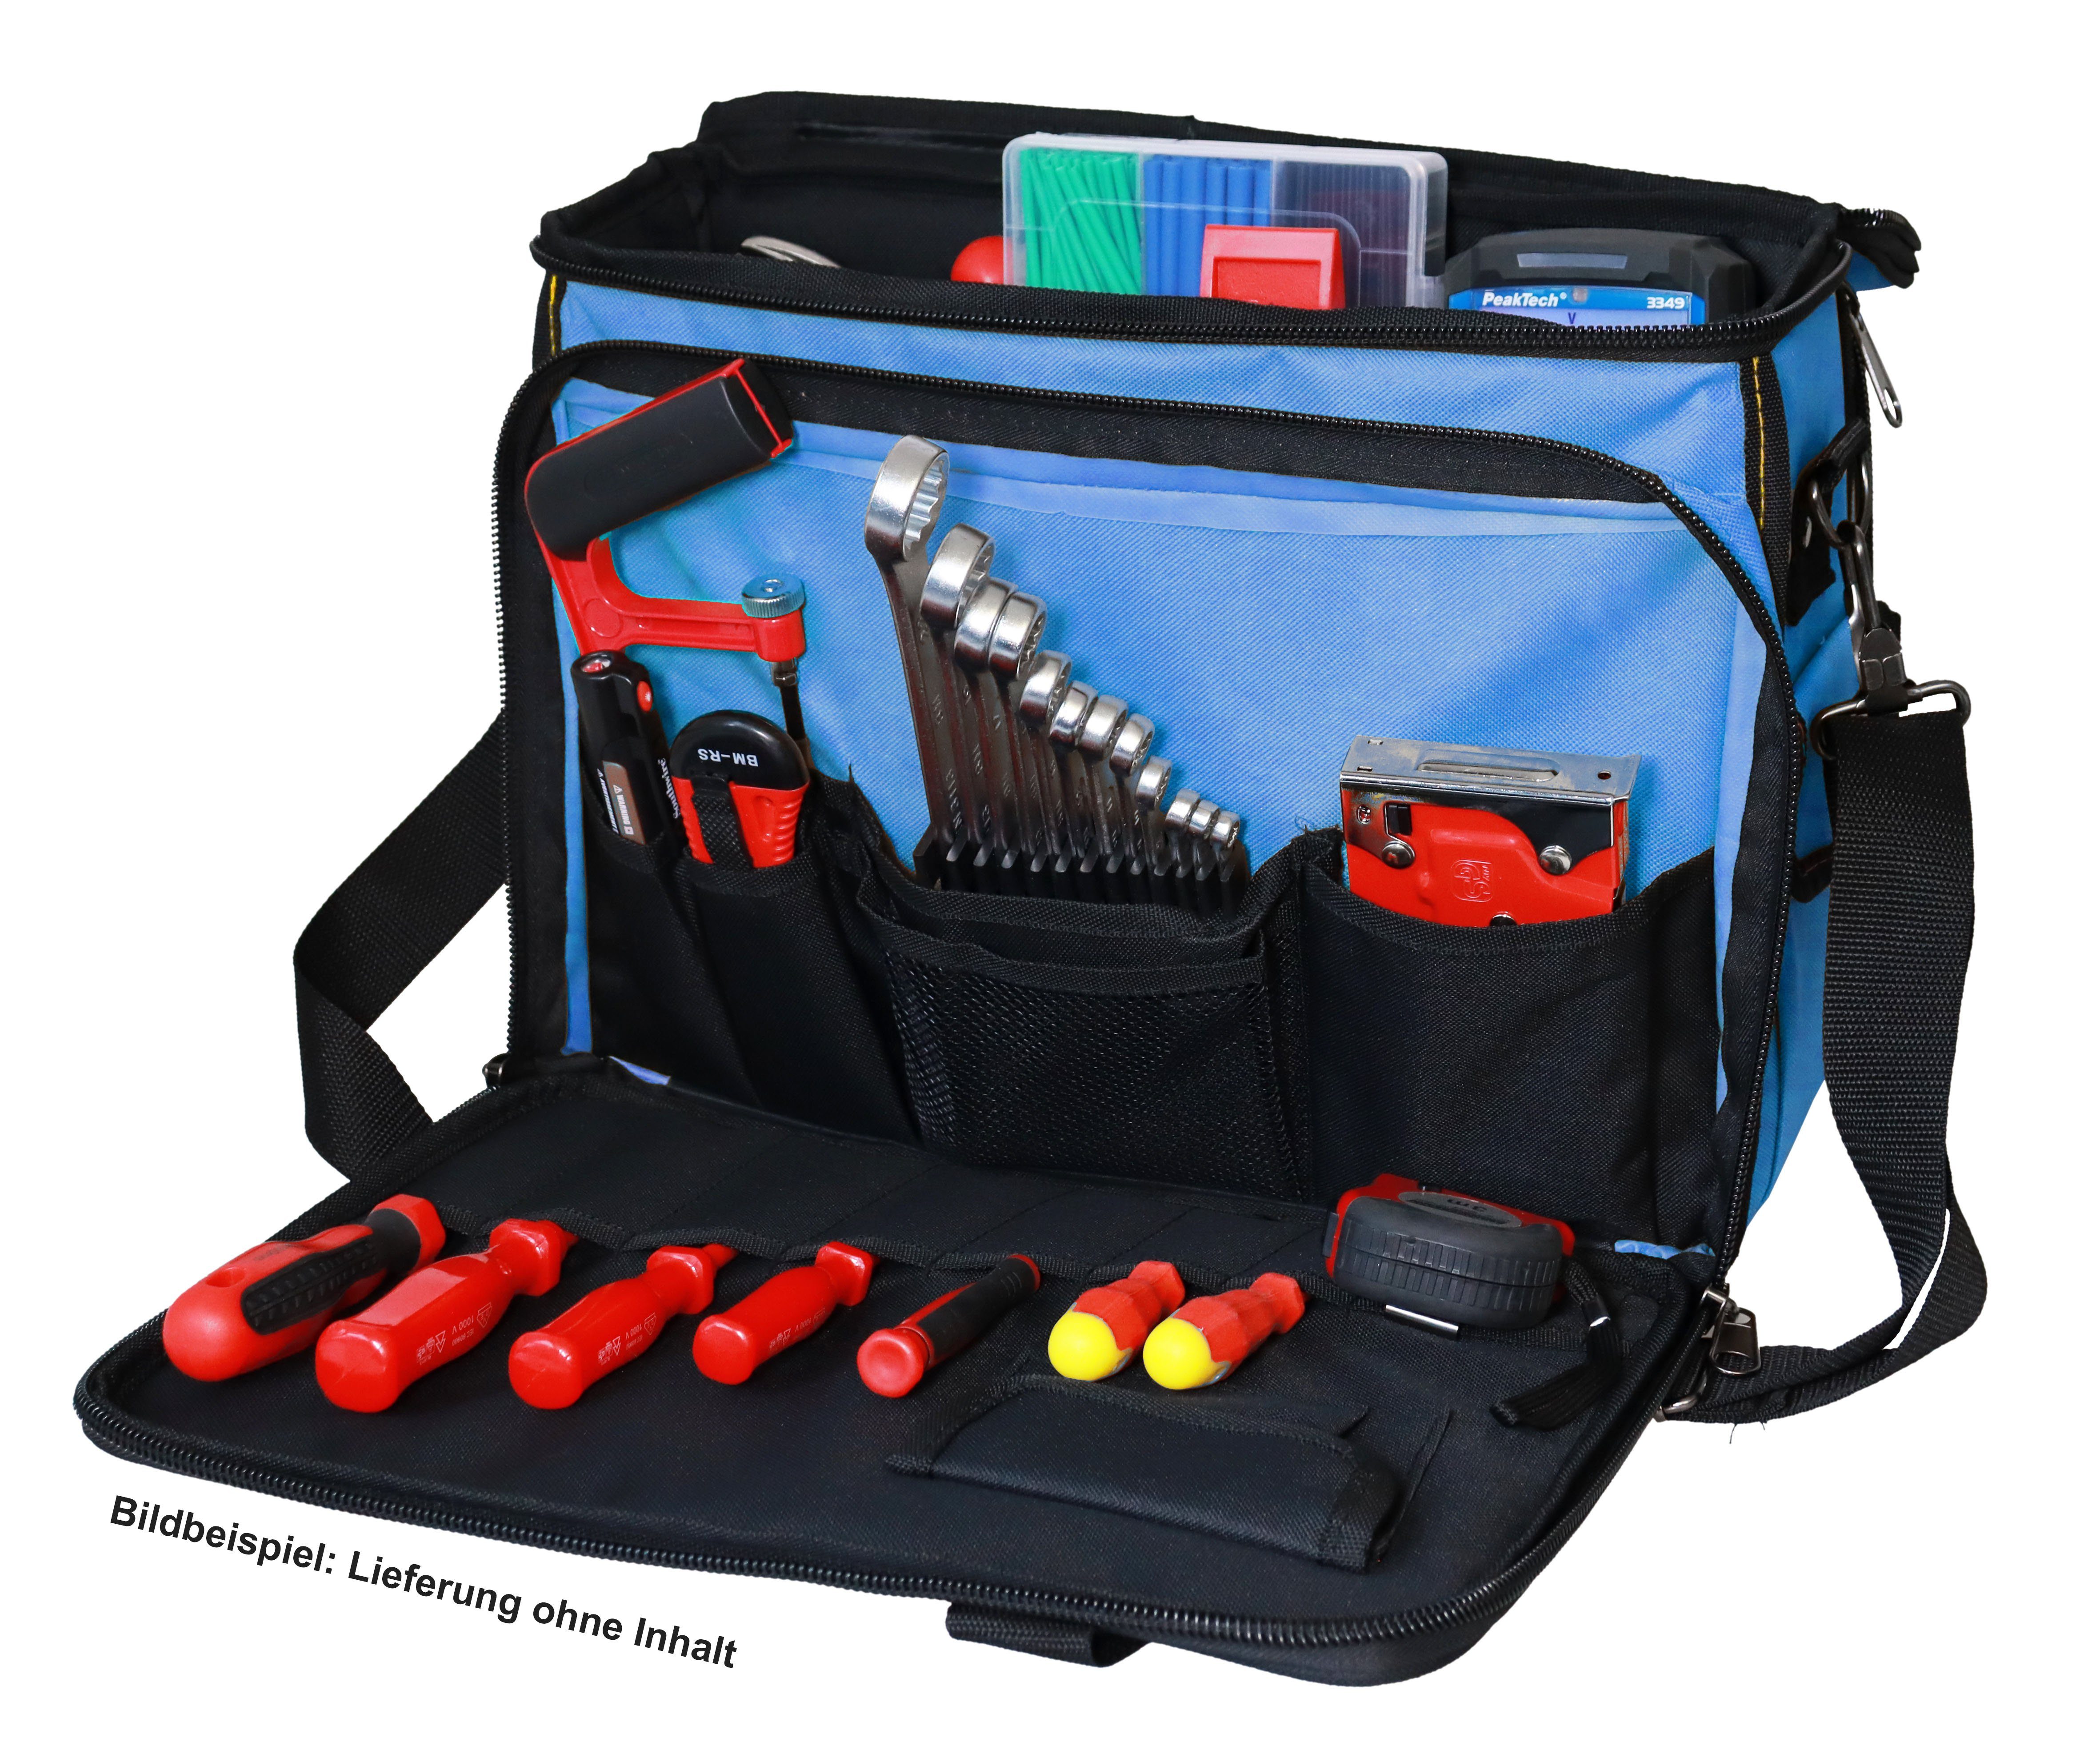 Tragkraft, Fächern Tragetasche kg Werkzeug YPC und Einschüben Werkzeugtasche "Operator" Werkzeugtasche 40x32x20cm, XL, Blau 20 Haltern, für mit Umhängetasche,